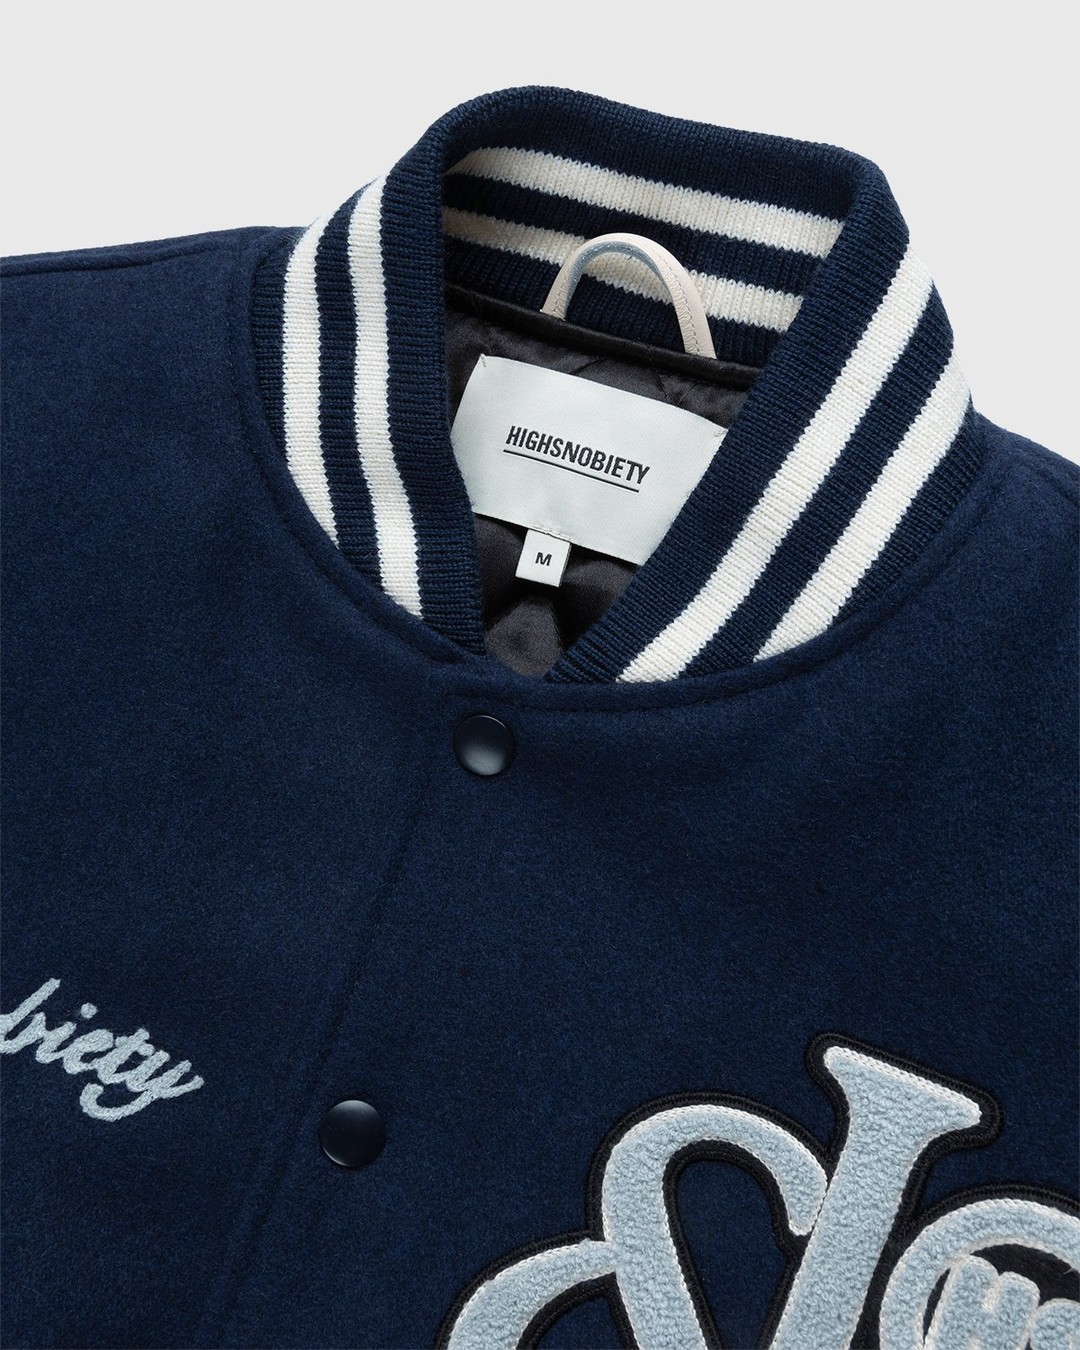 Jacob & Co. x Highsnobiety – Logo Varsity Jacket Navy Creme - Outerwear - Blue - Image 3